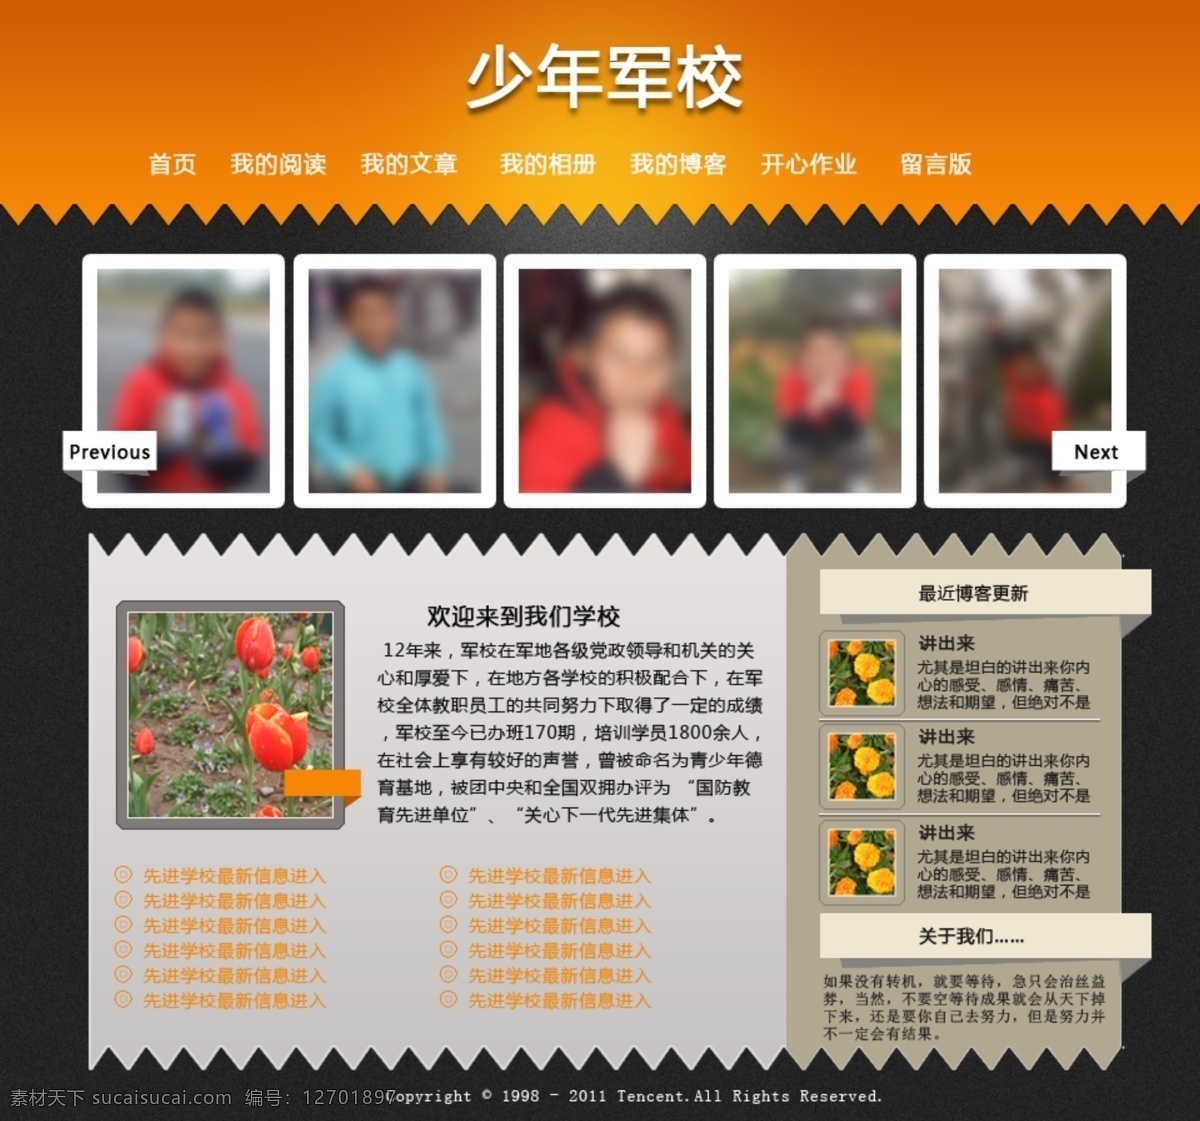 橙色 网页模板 源文件 中文模版 少年 军校 网页设计 模板下载 少年军校 中文网页 网页素材